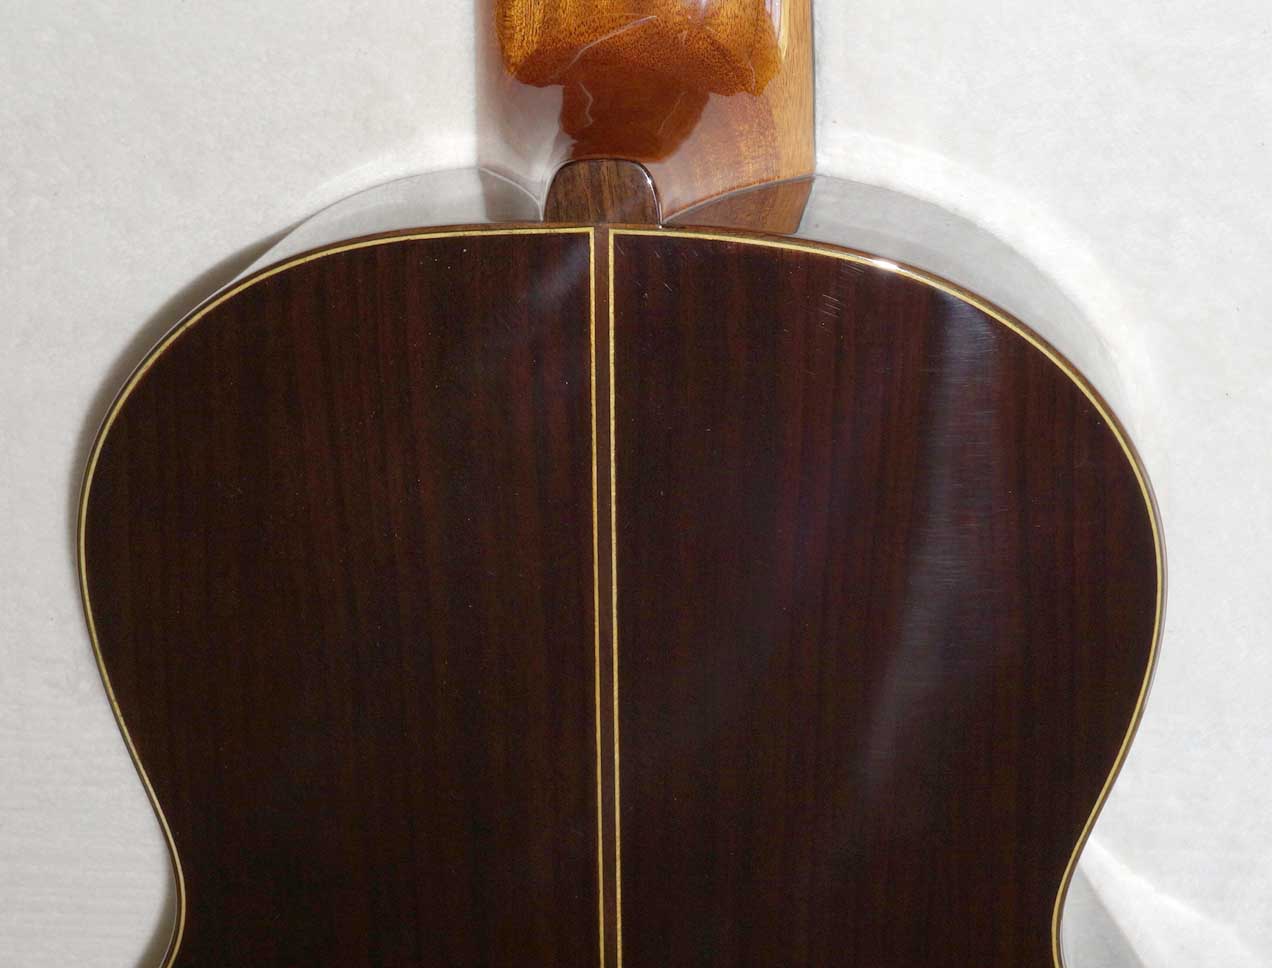 Bartolex SLS10 Classical 10-String Guitar w/Case, Spruce Top